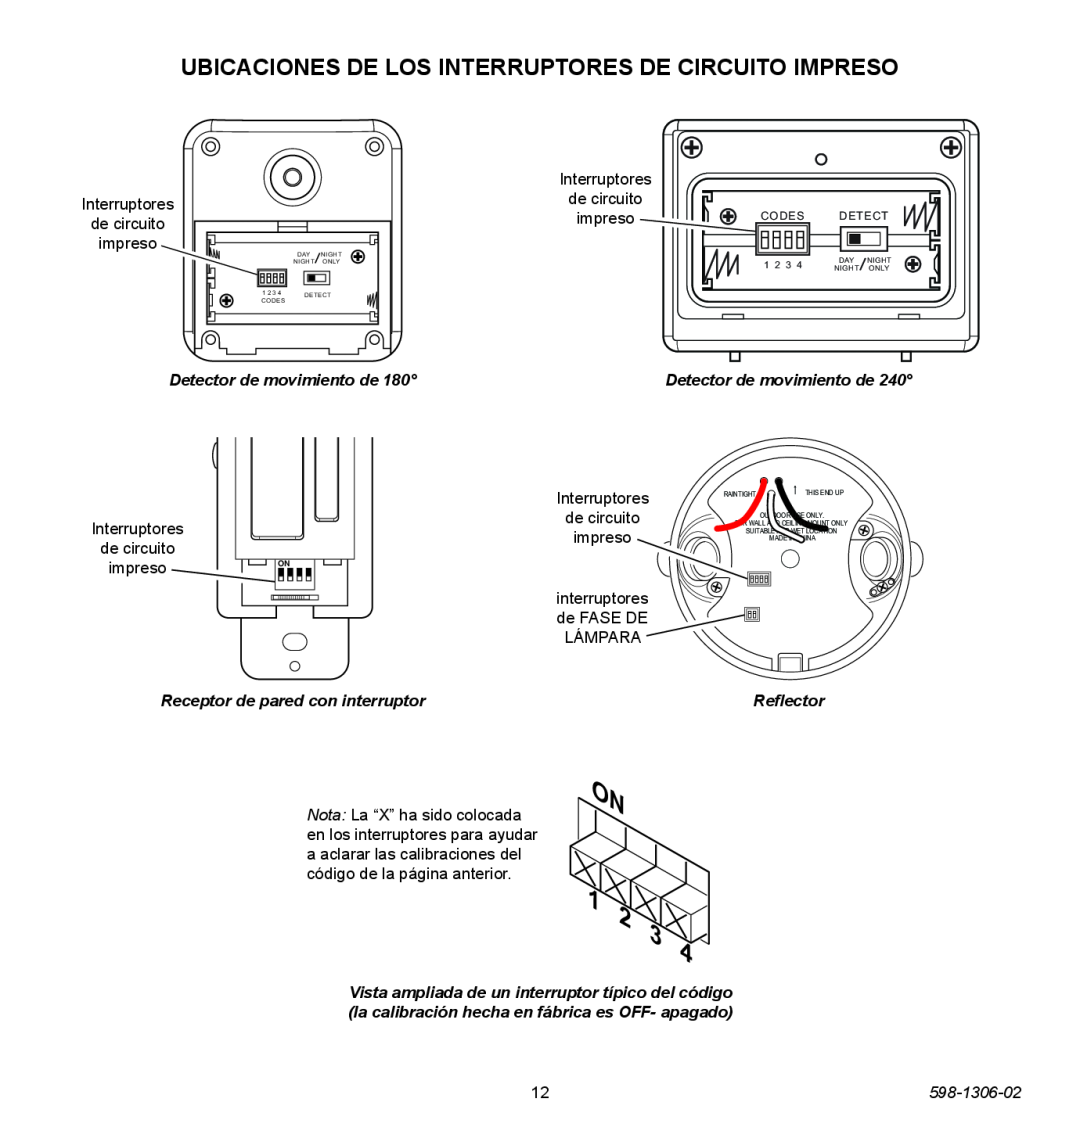 Heath Zenith 598-1306-02 manual Detector de movimiento de, Receptor de pared con interruptor, Reflector, Codes, 1 2 3 